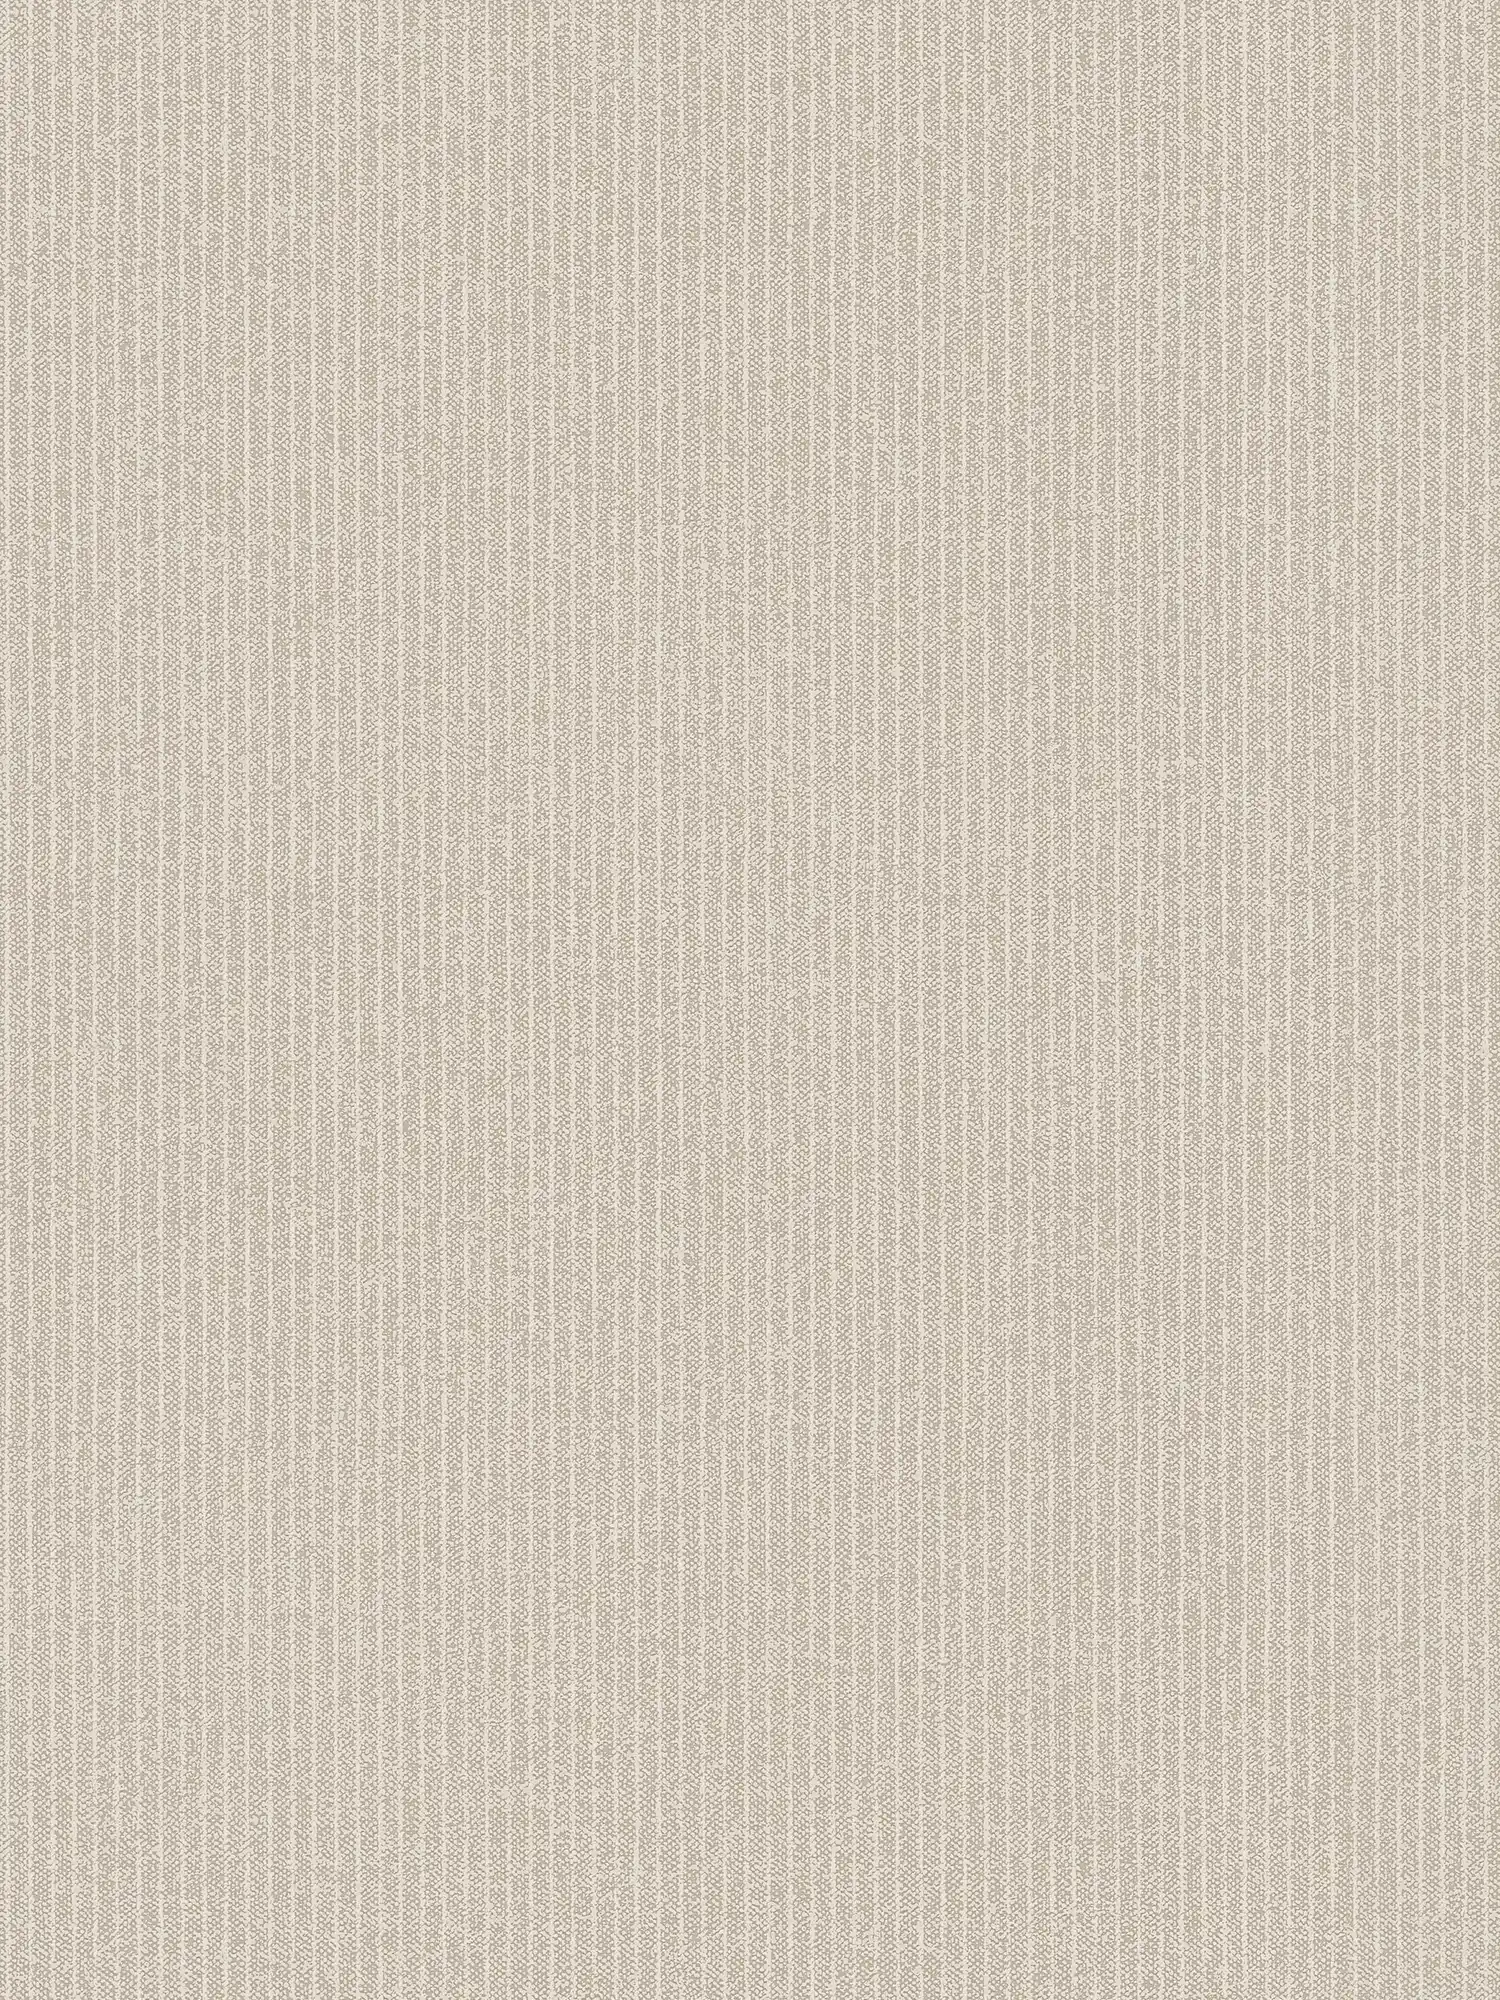 Lines wallpaper narrow stripes, linen look - beige, brown
